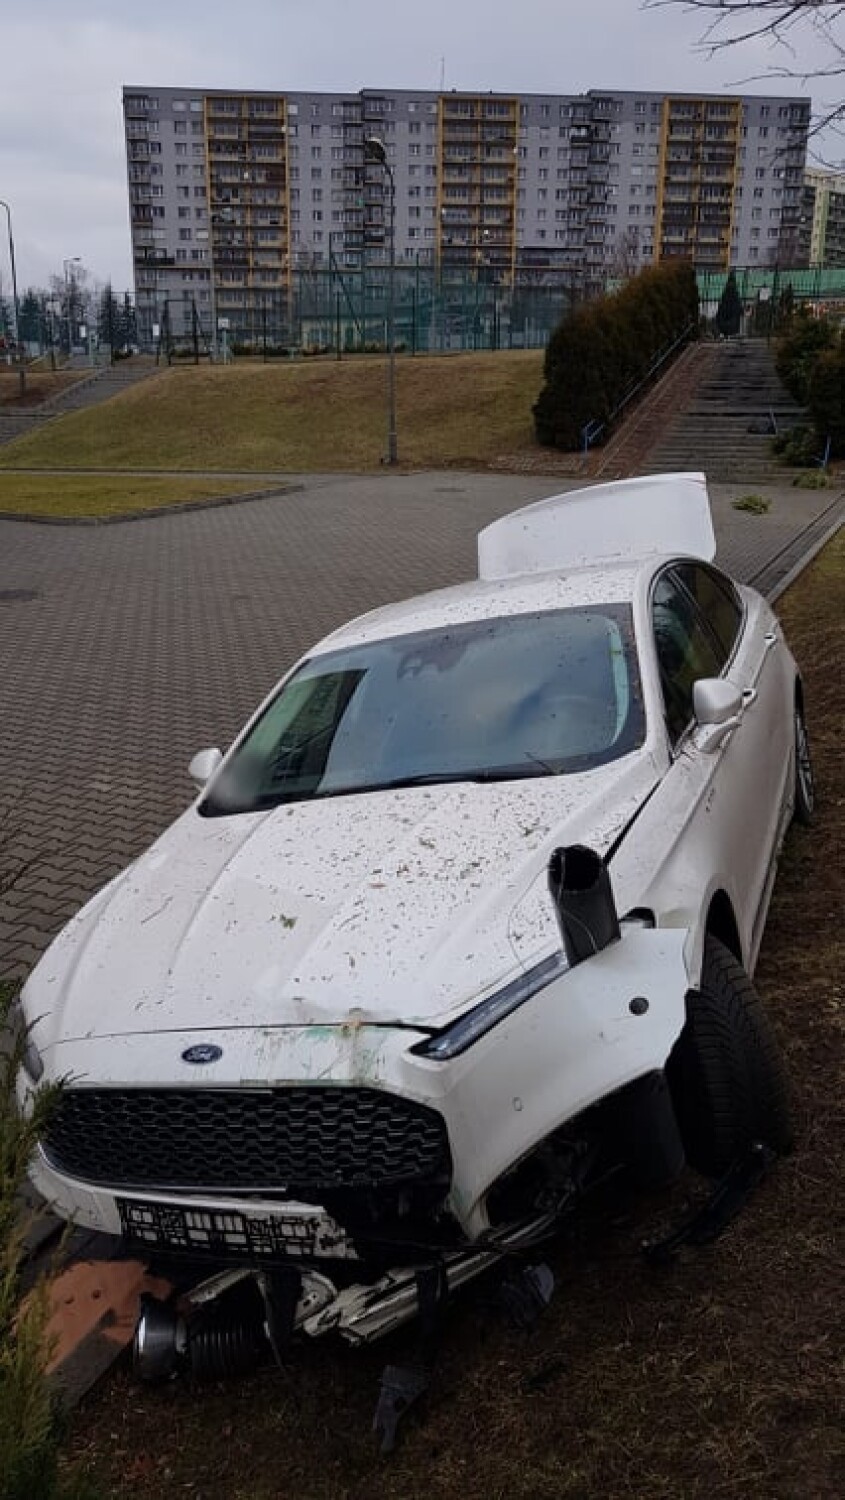 Wypadek na teren Szkoły Podstawowej nr 8 w Tarnowie. Samochód staranował ogrodzenie, zjechał ze skarpy i schodów [ZDJĘCIA]